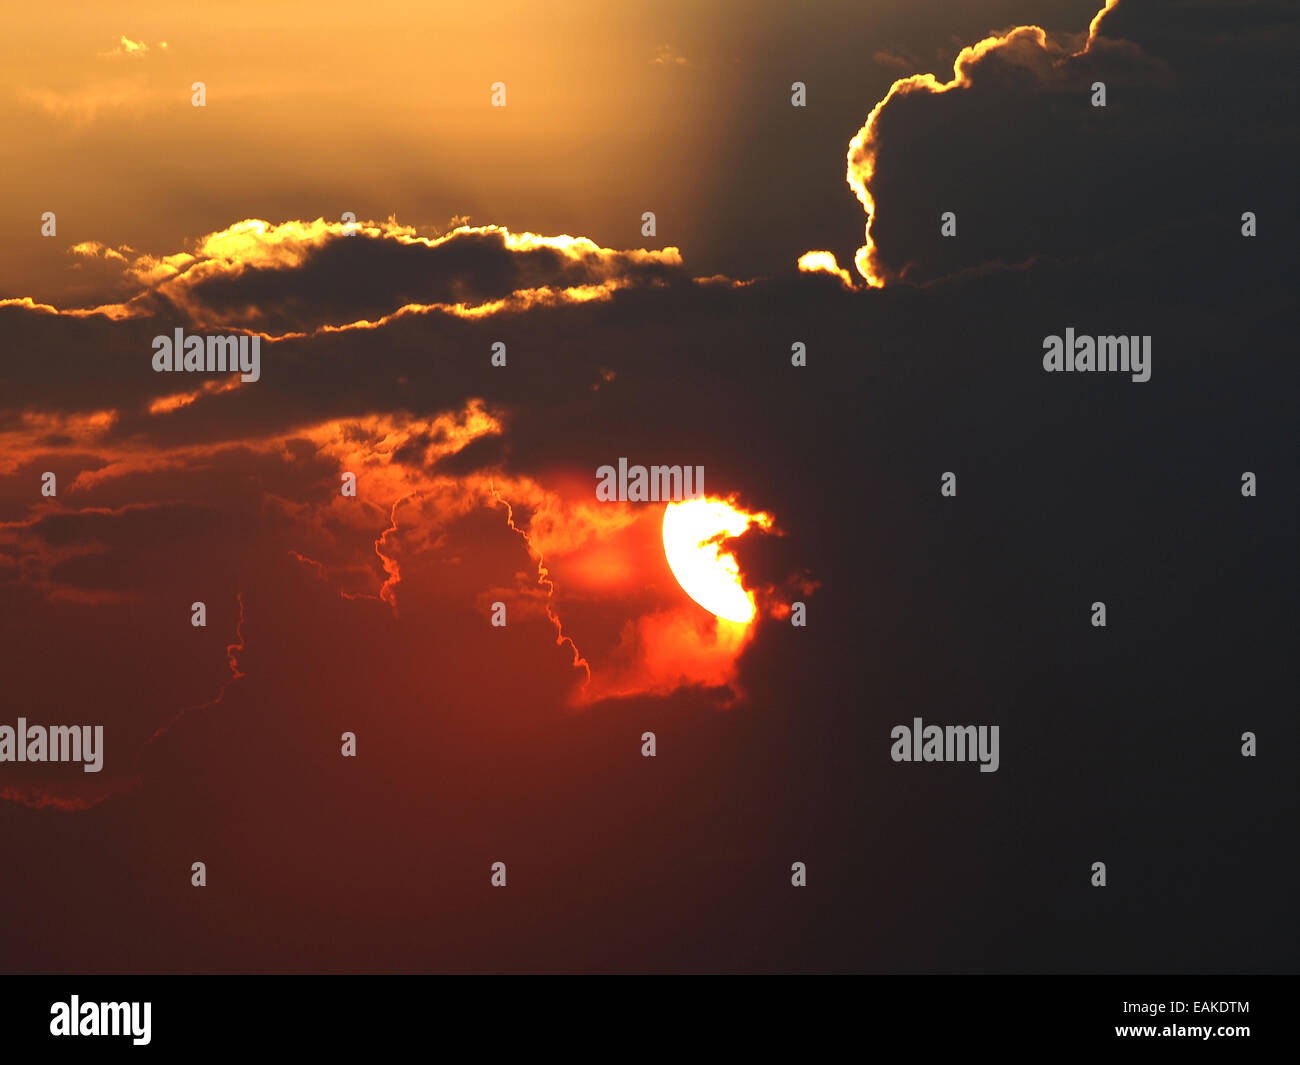 Sunset / sunrise con nuvole, raggi di luce e altri effetti atmosferici Foto Stock